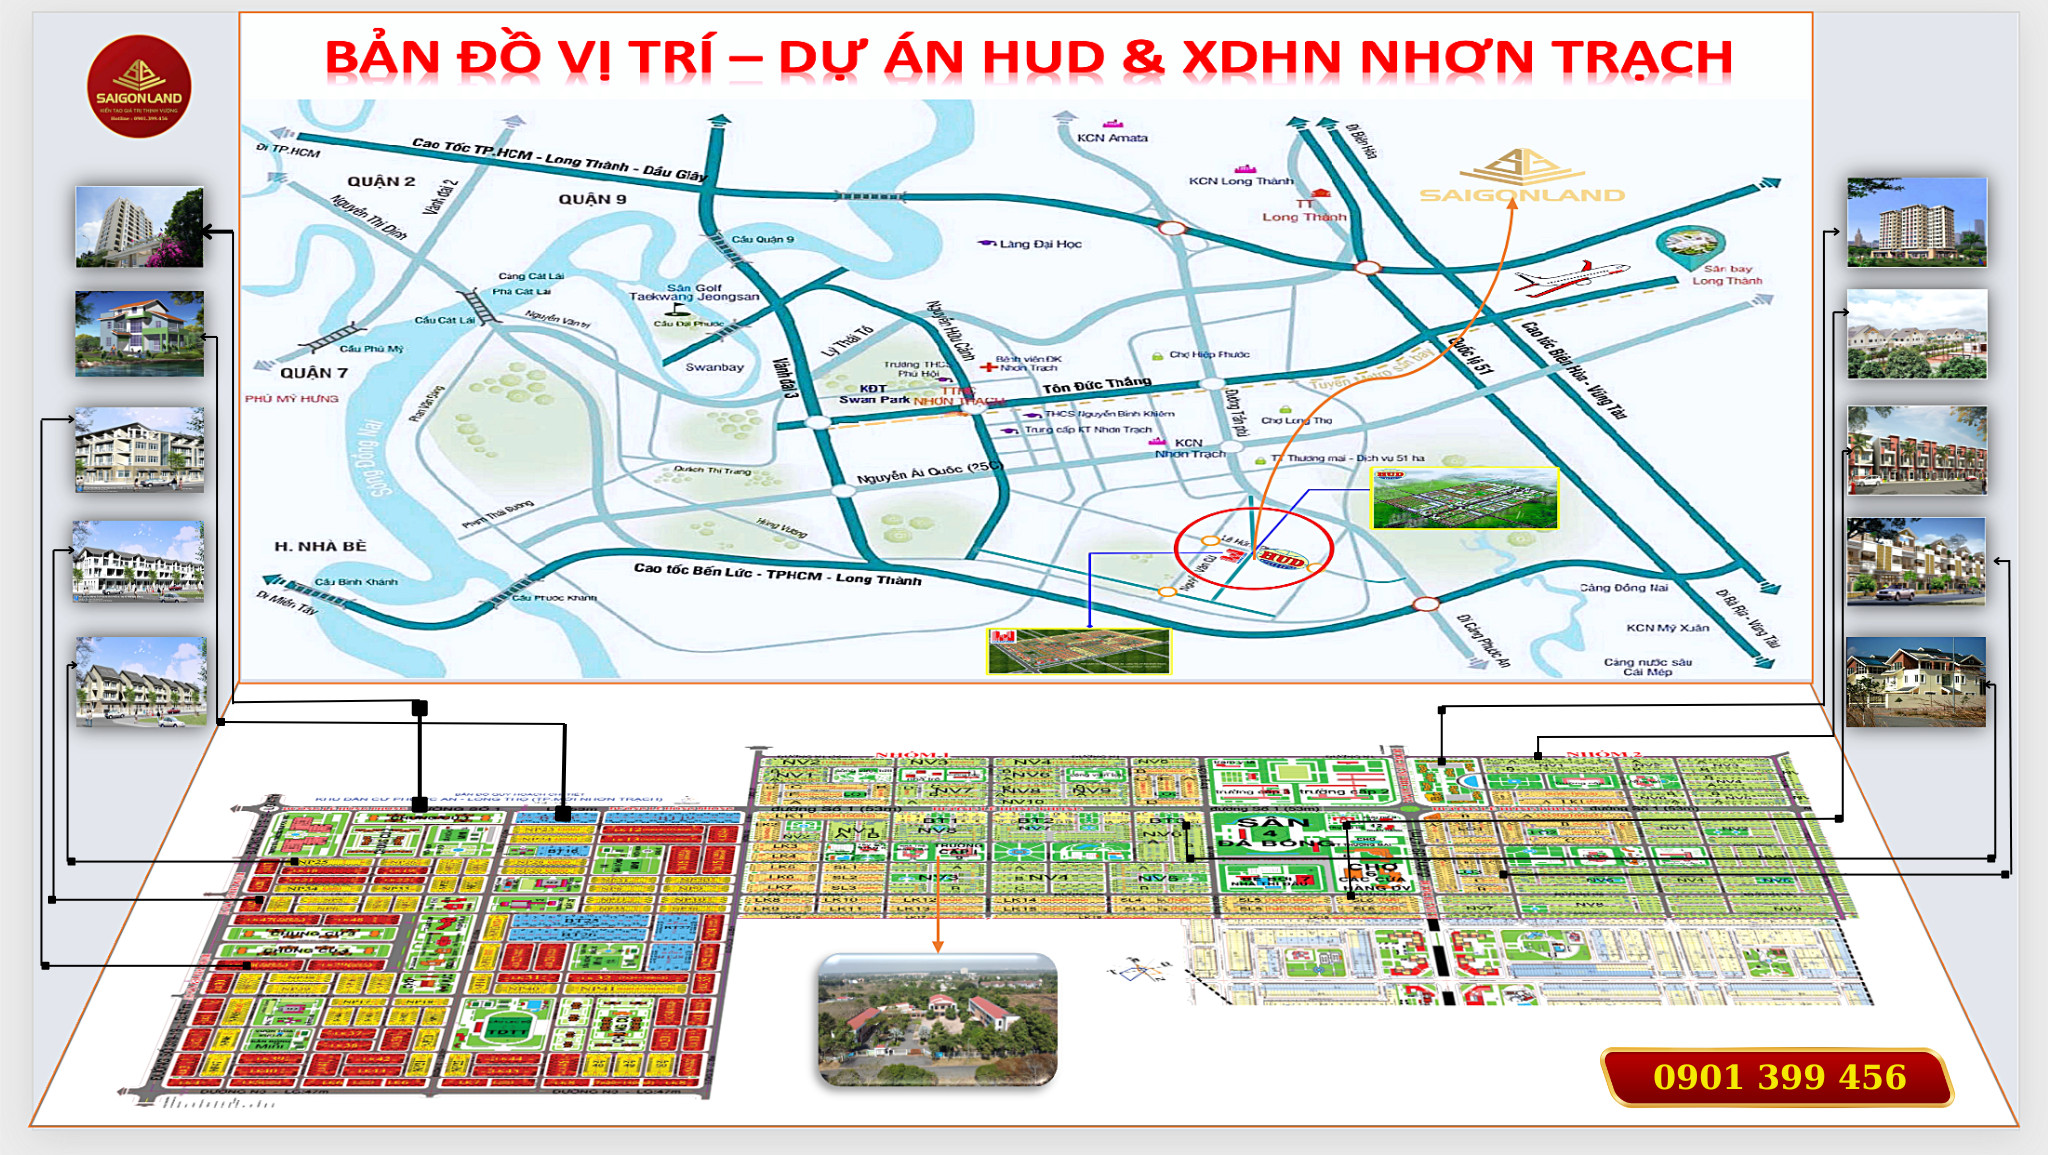 Cty Saigonland Nhơn Trạch - Mua bán đất Nhơn Trạch - Dự án Hud Nhơn Trạch Đồng Nai. - Ảnh chính